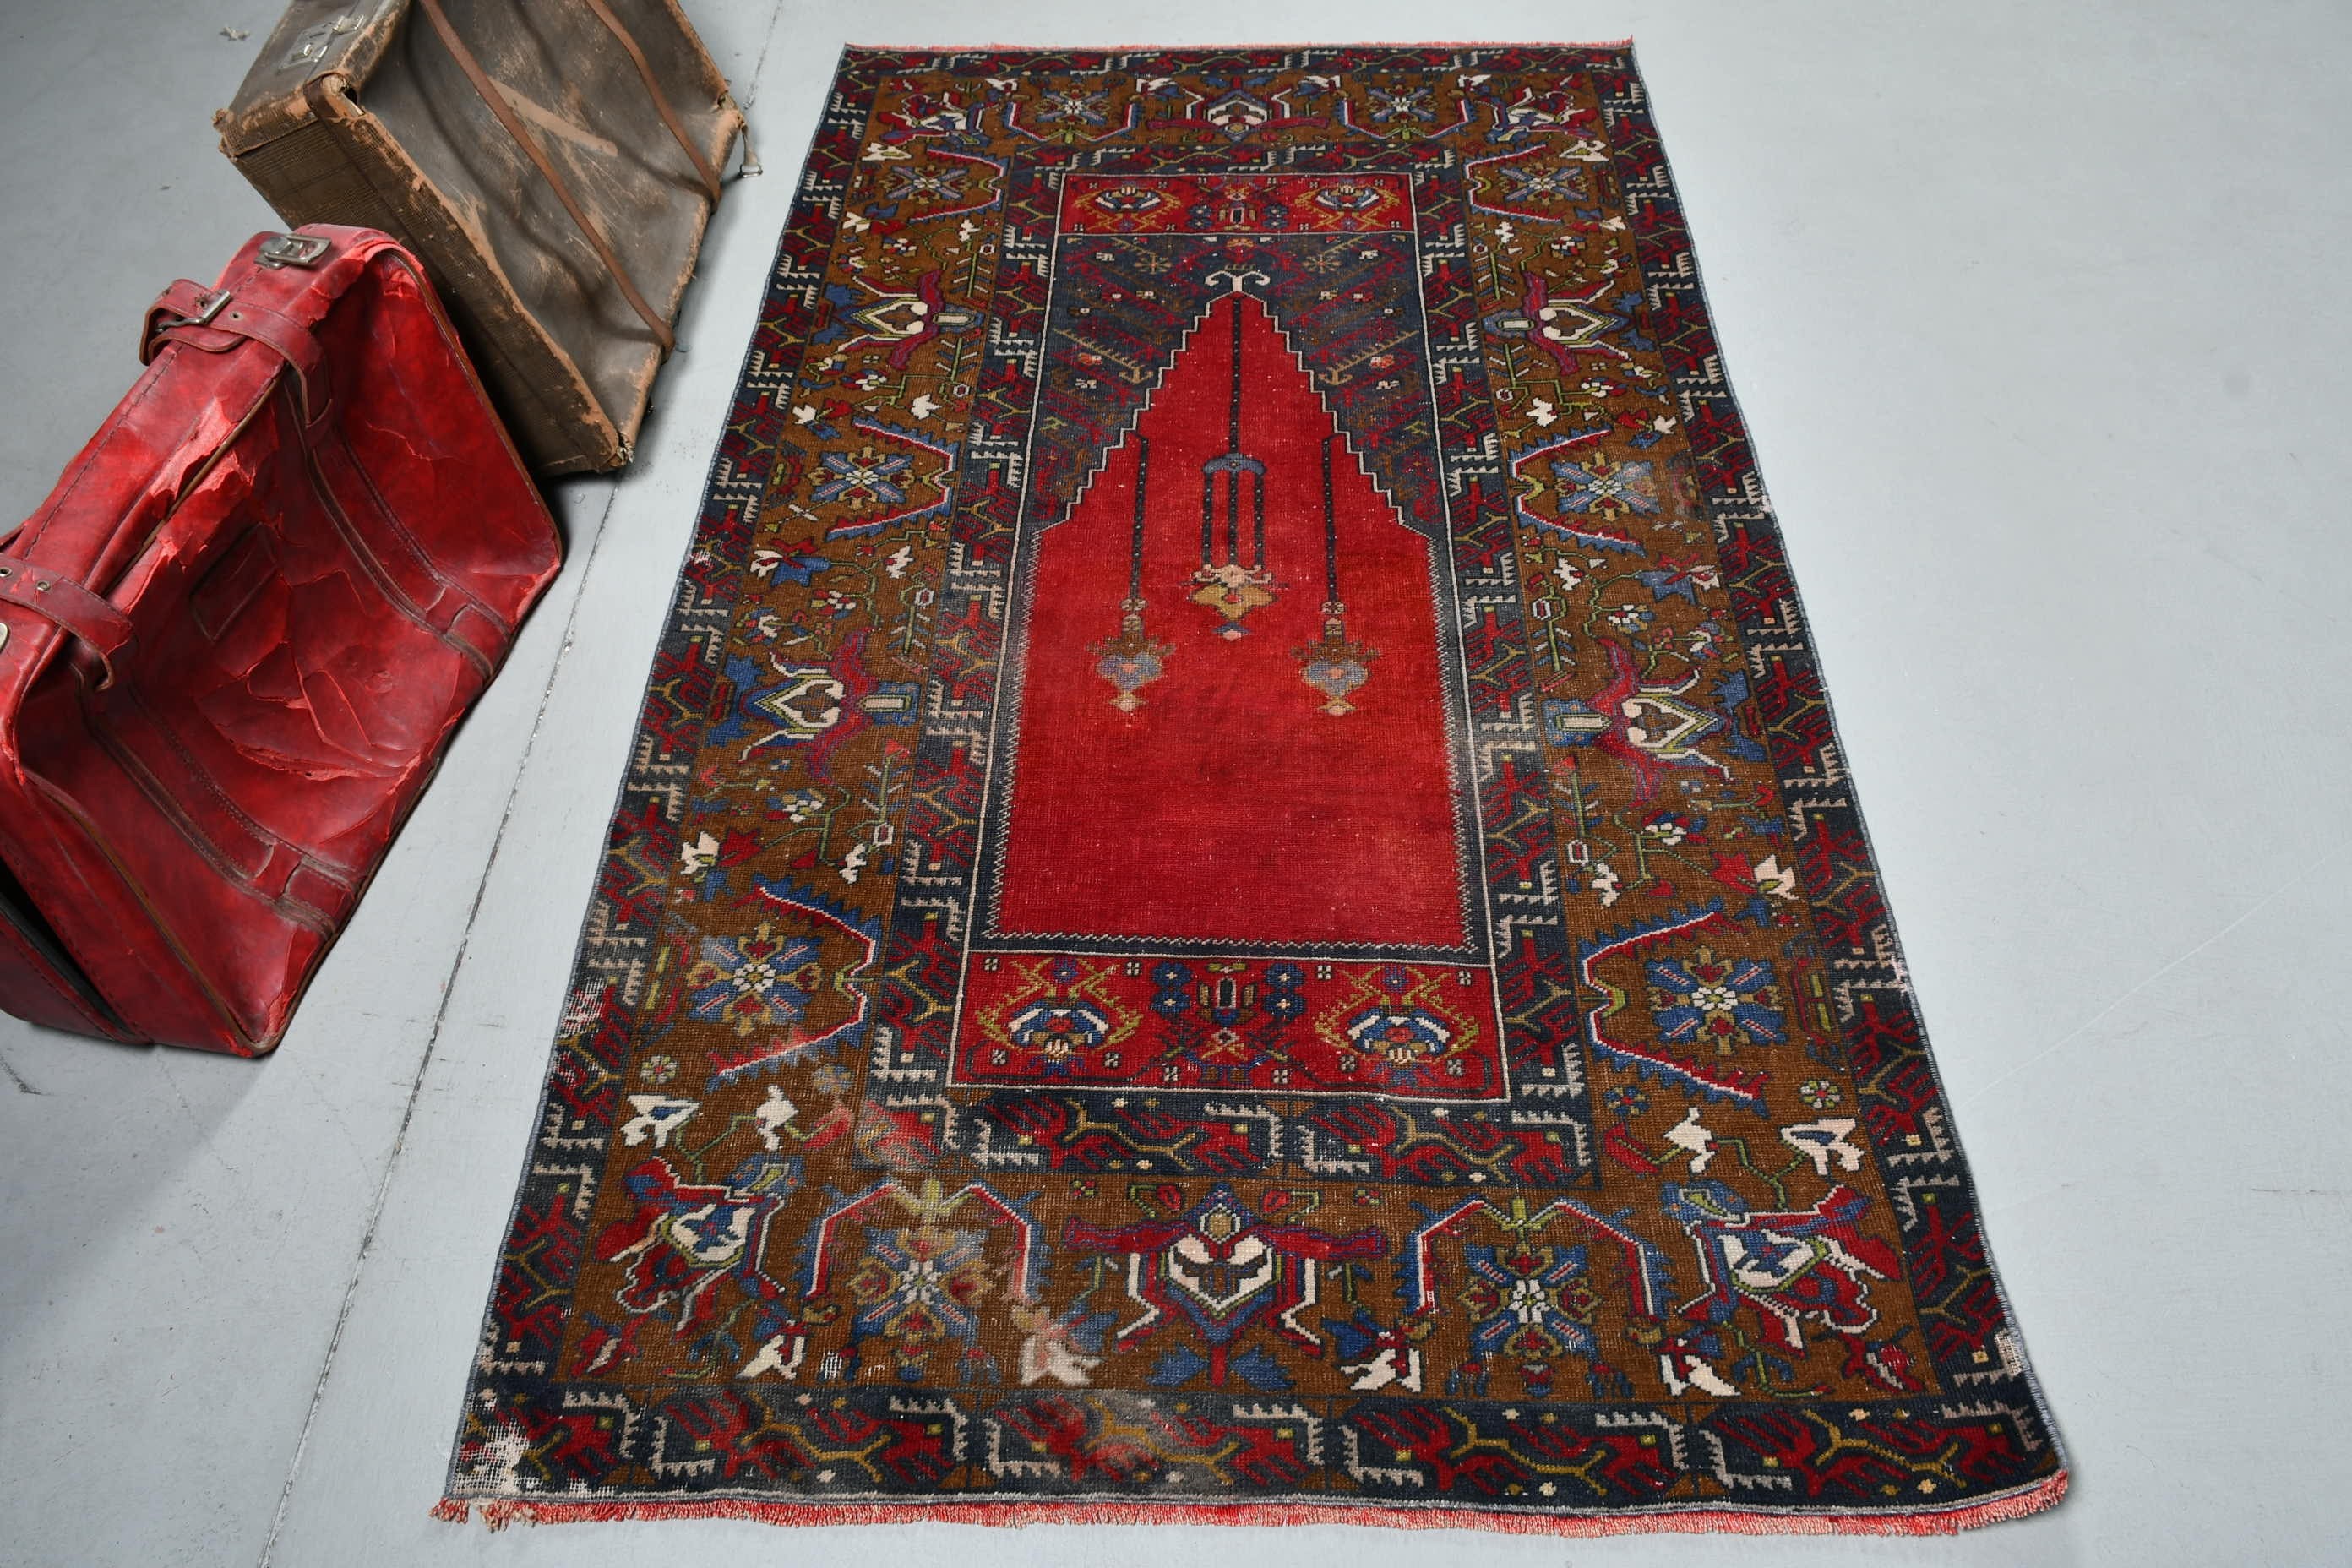 Vintage Rug, Organic Rug, Living Room Rugs, Red Moroccan Rugs, Home Decor Rugs, Turkish Rugs, Bedroom Rug, Floor Rugs, 3.7x6.5 ft Area Rug